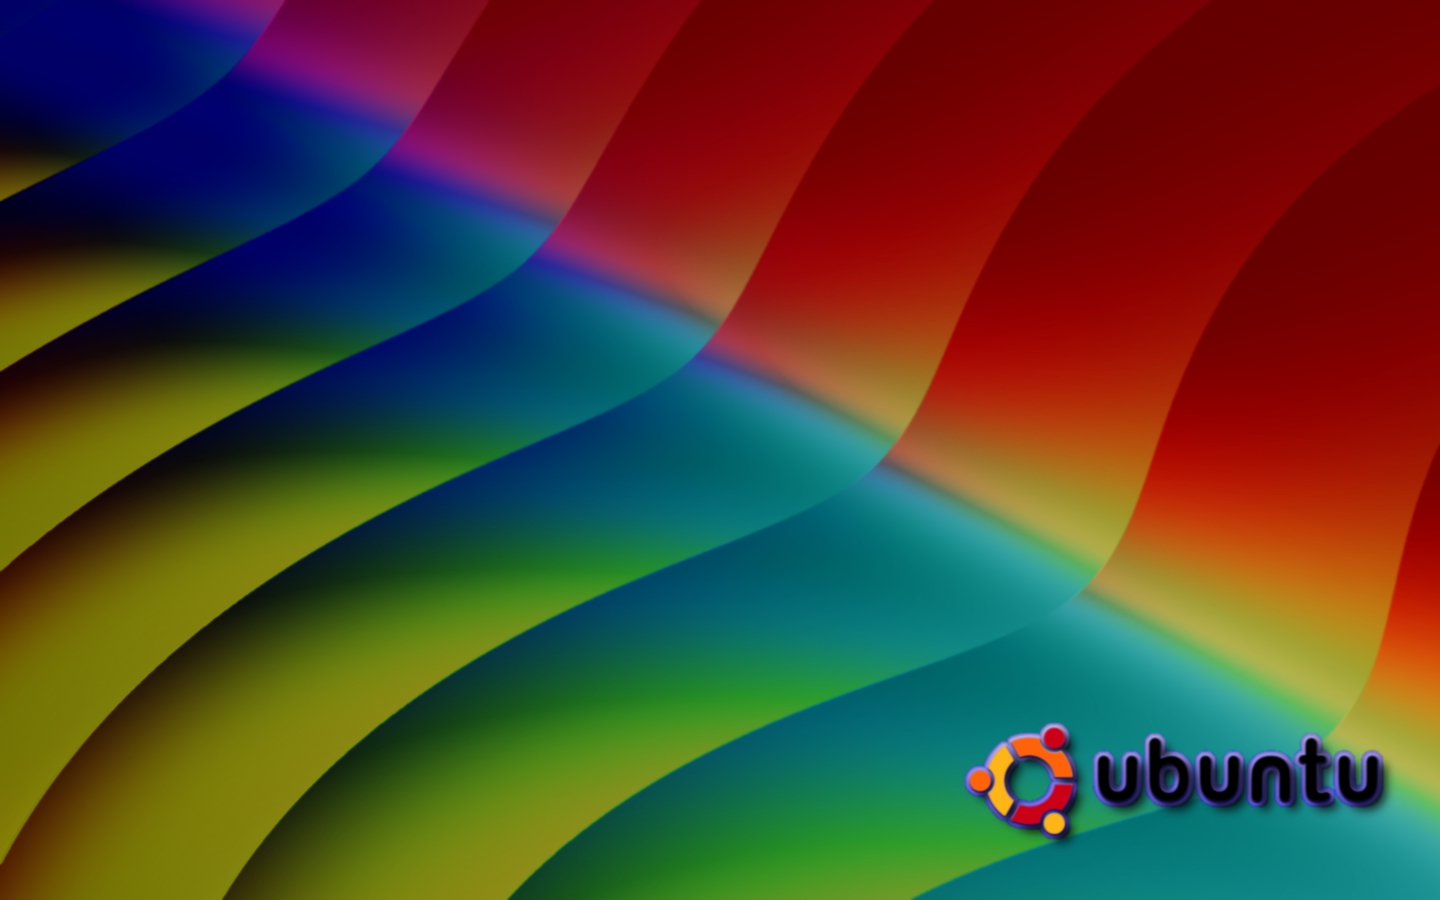 Pc Wallpaper Xp Gimp Made Ubuntu Widescreen Abstract